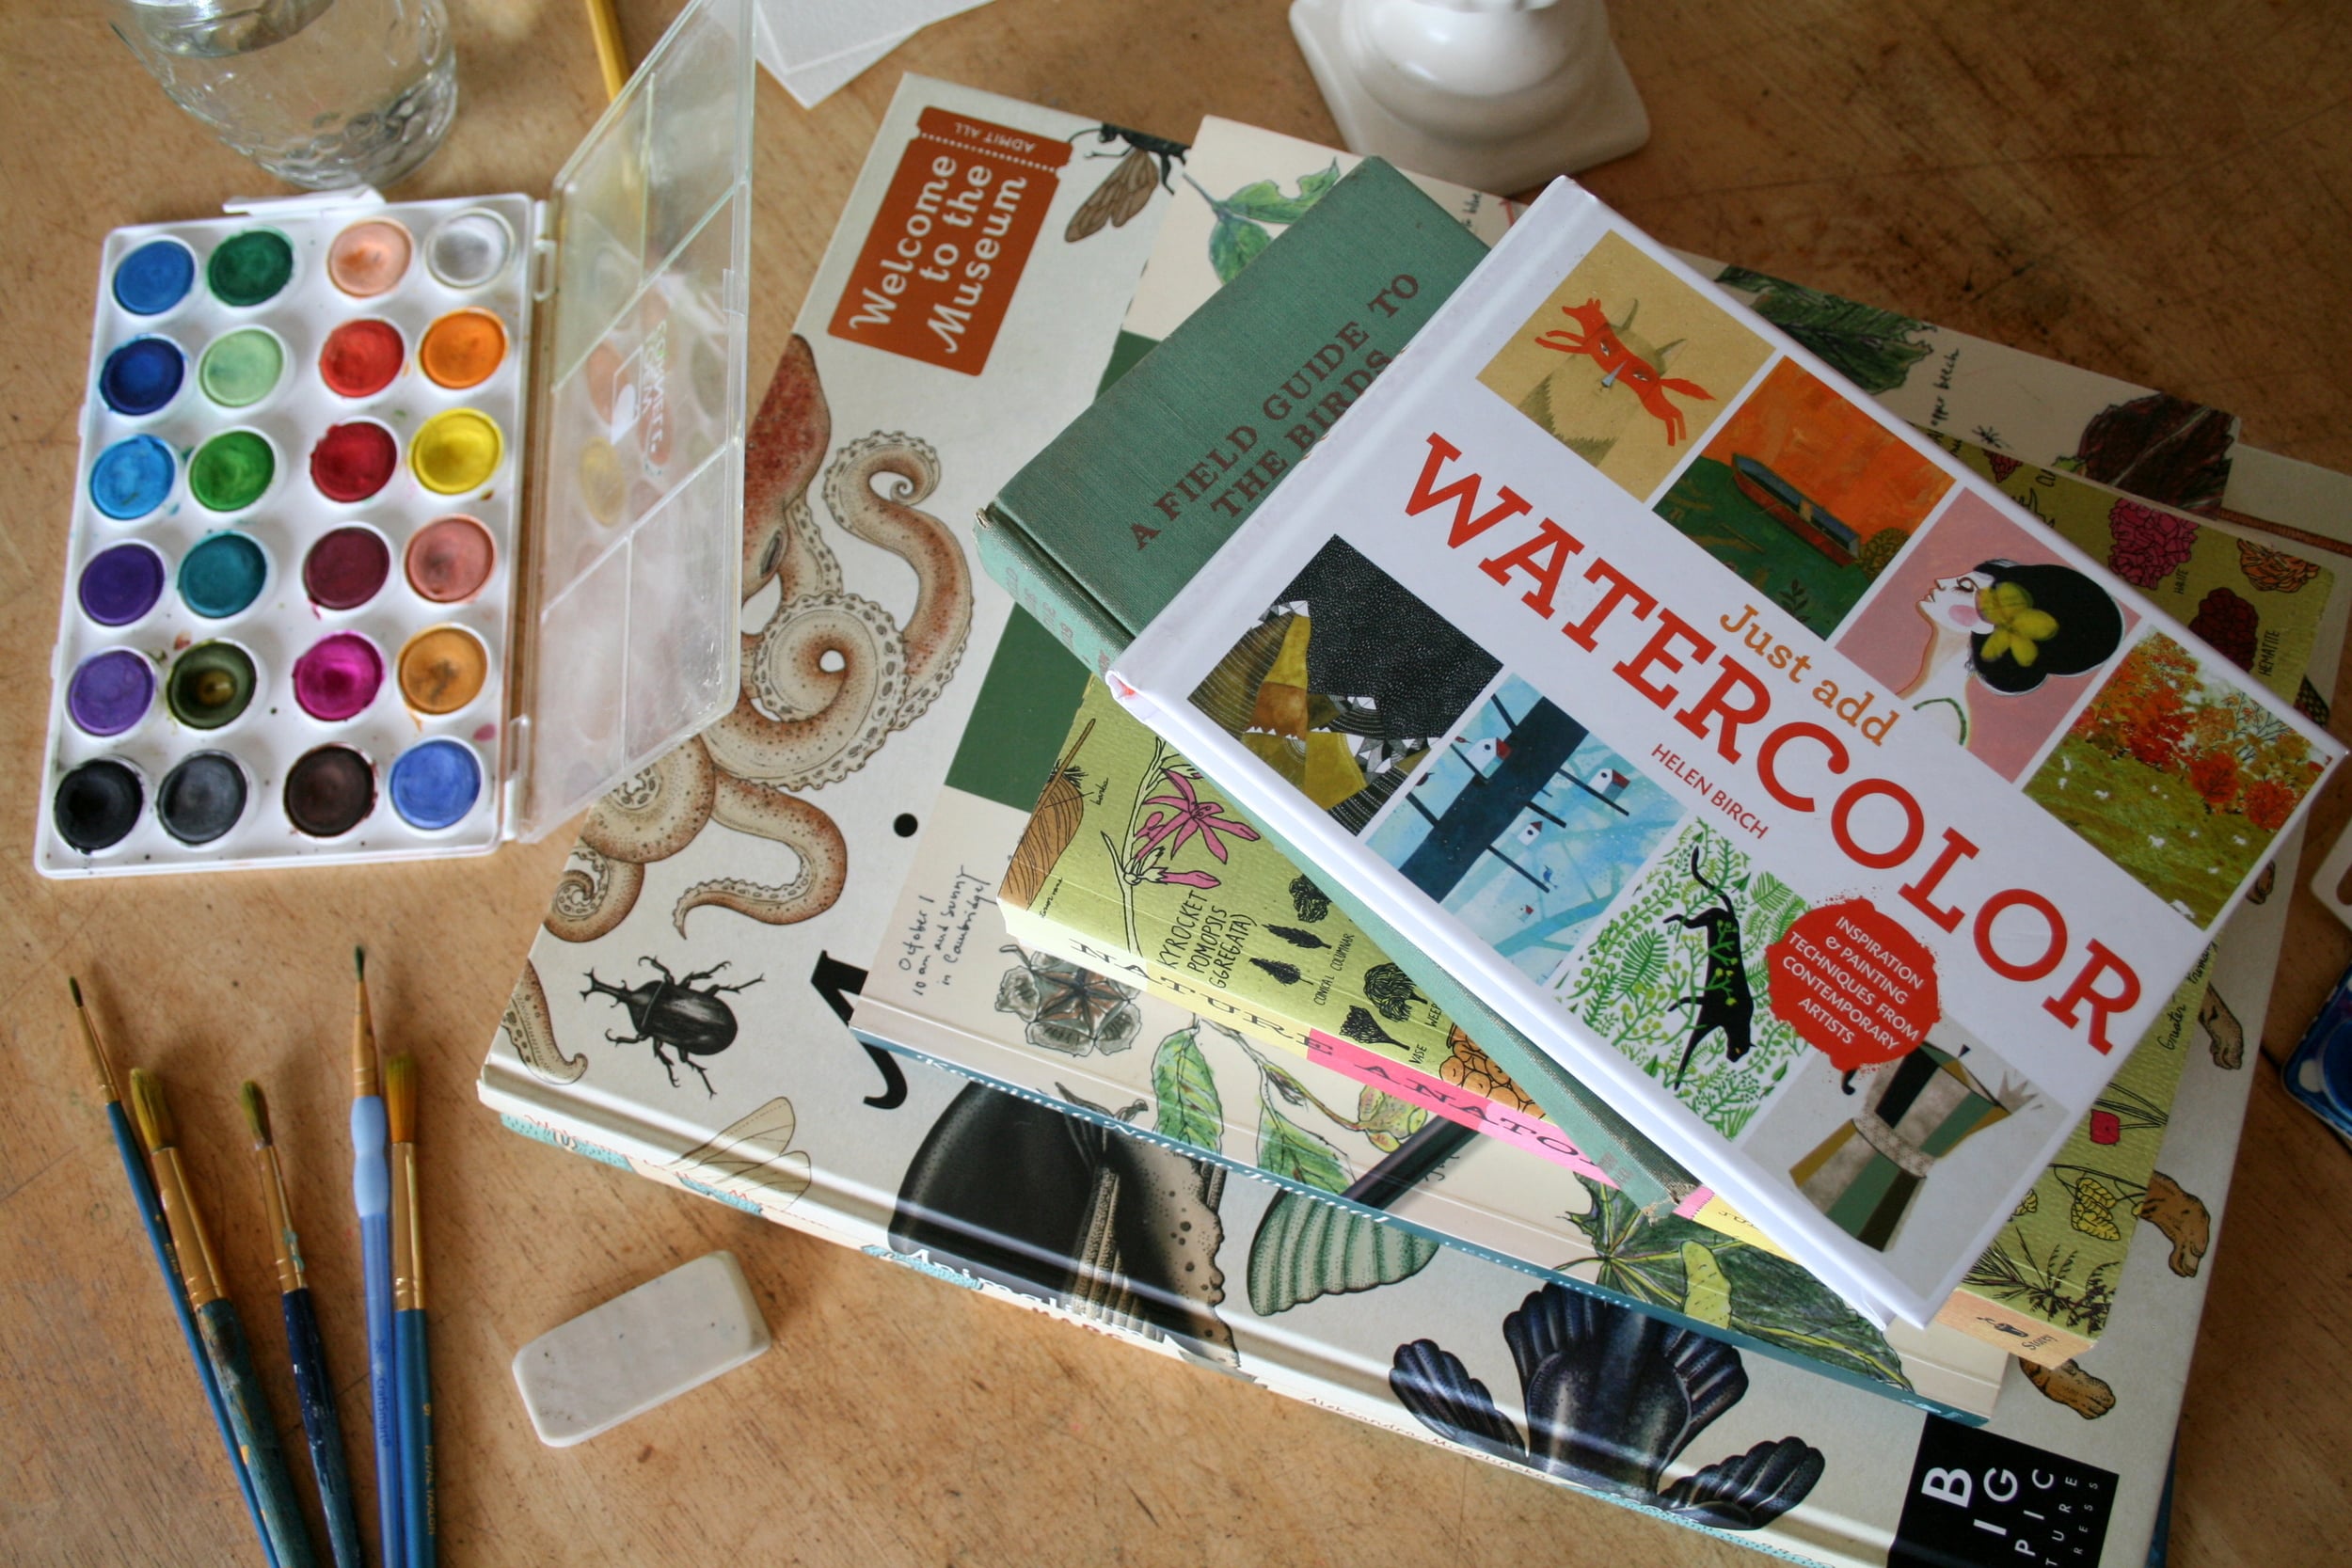 Watercolor Painting Techniques, Painting Techniques, Books